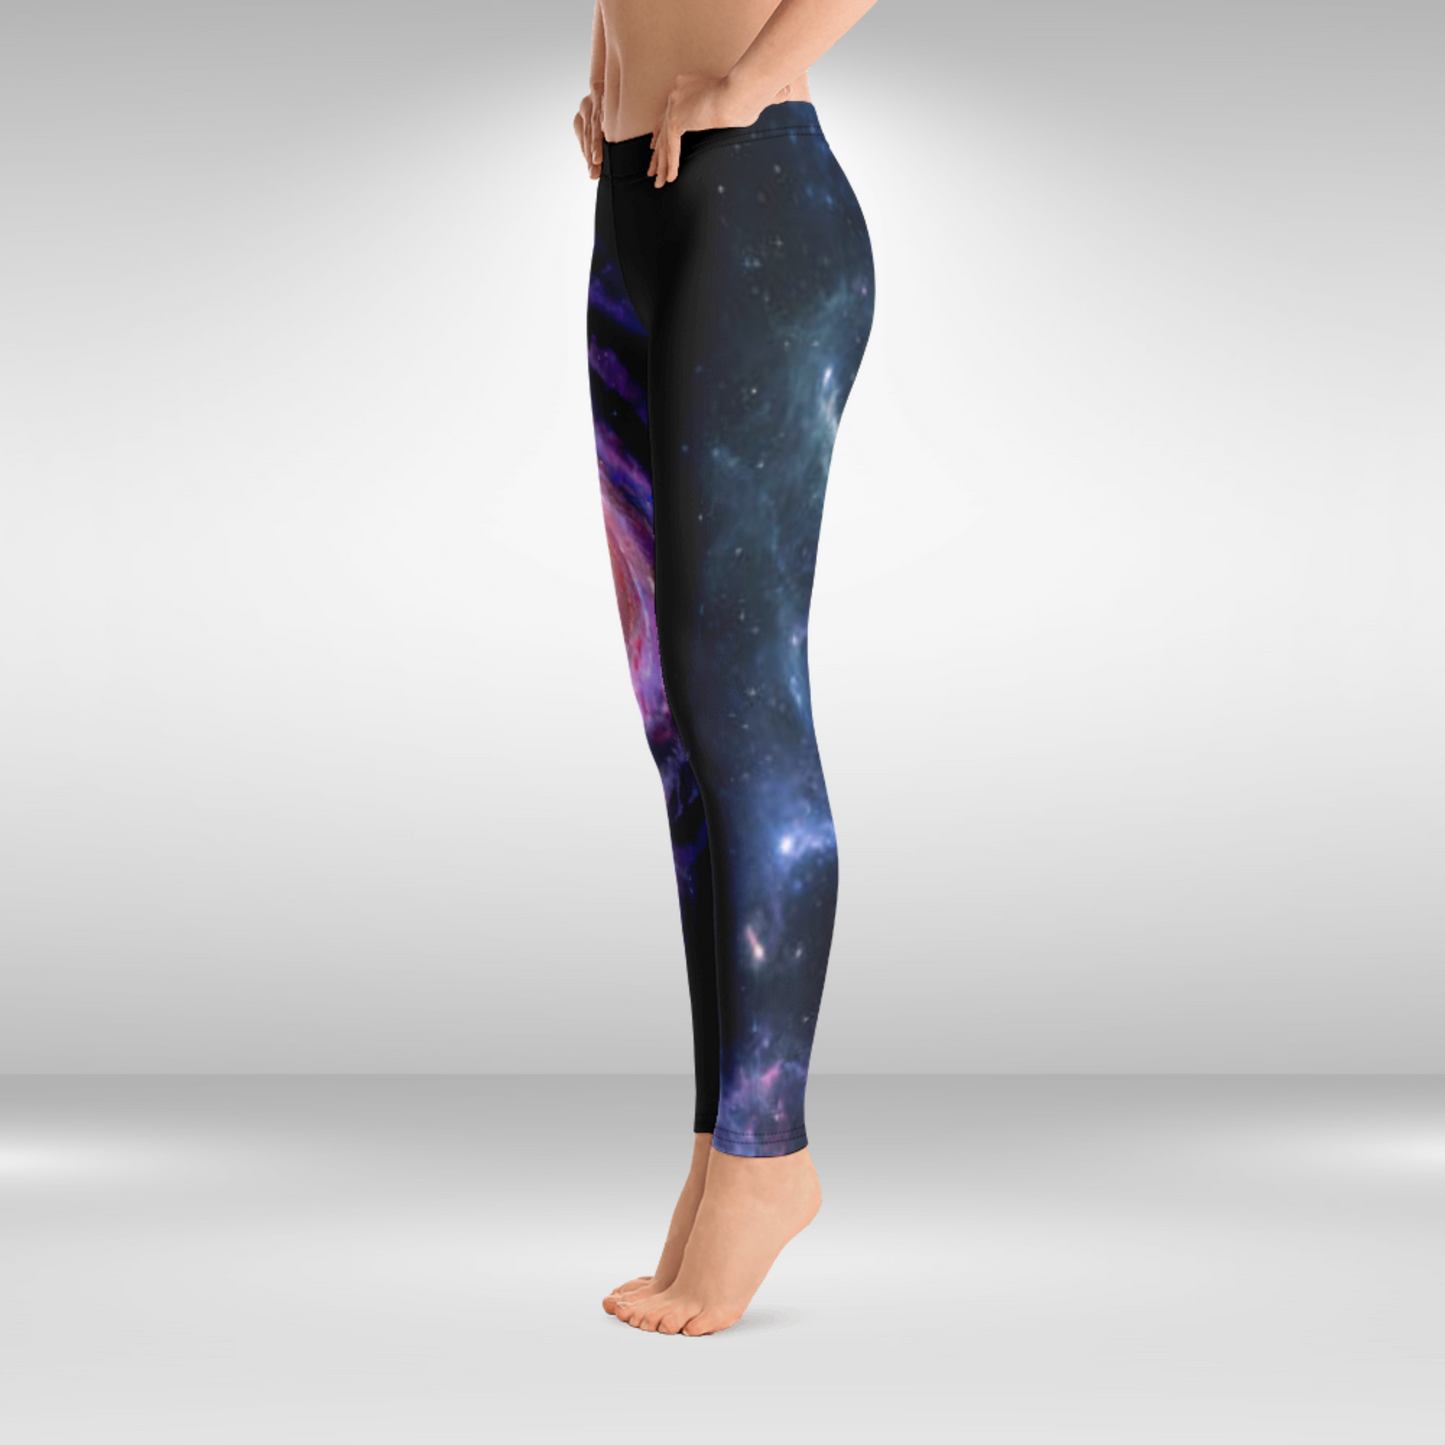 Women Gym Legging - Blue Galaxy Print